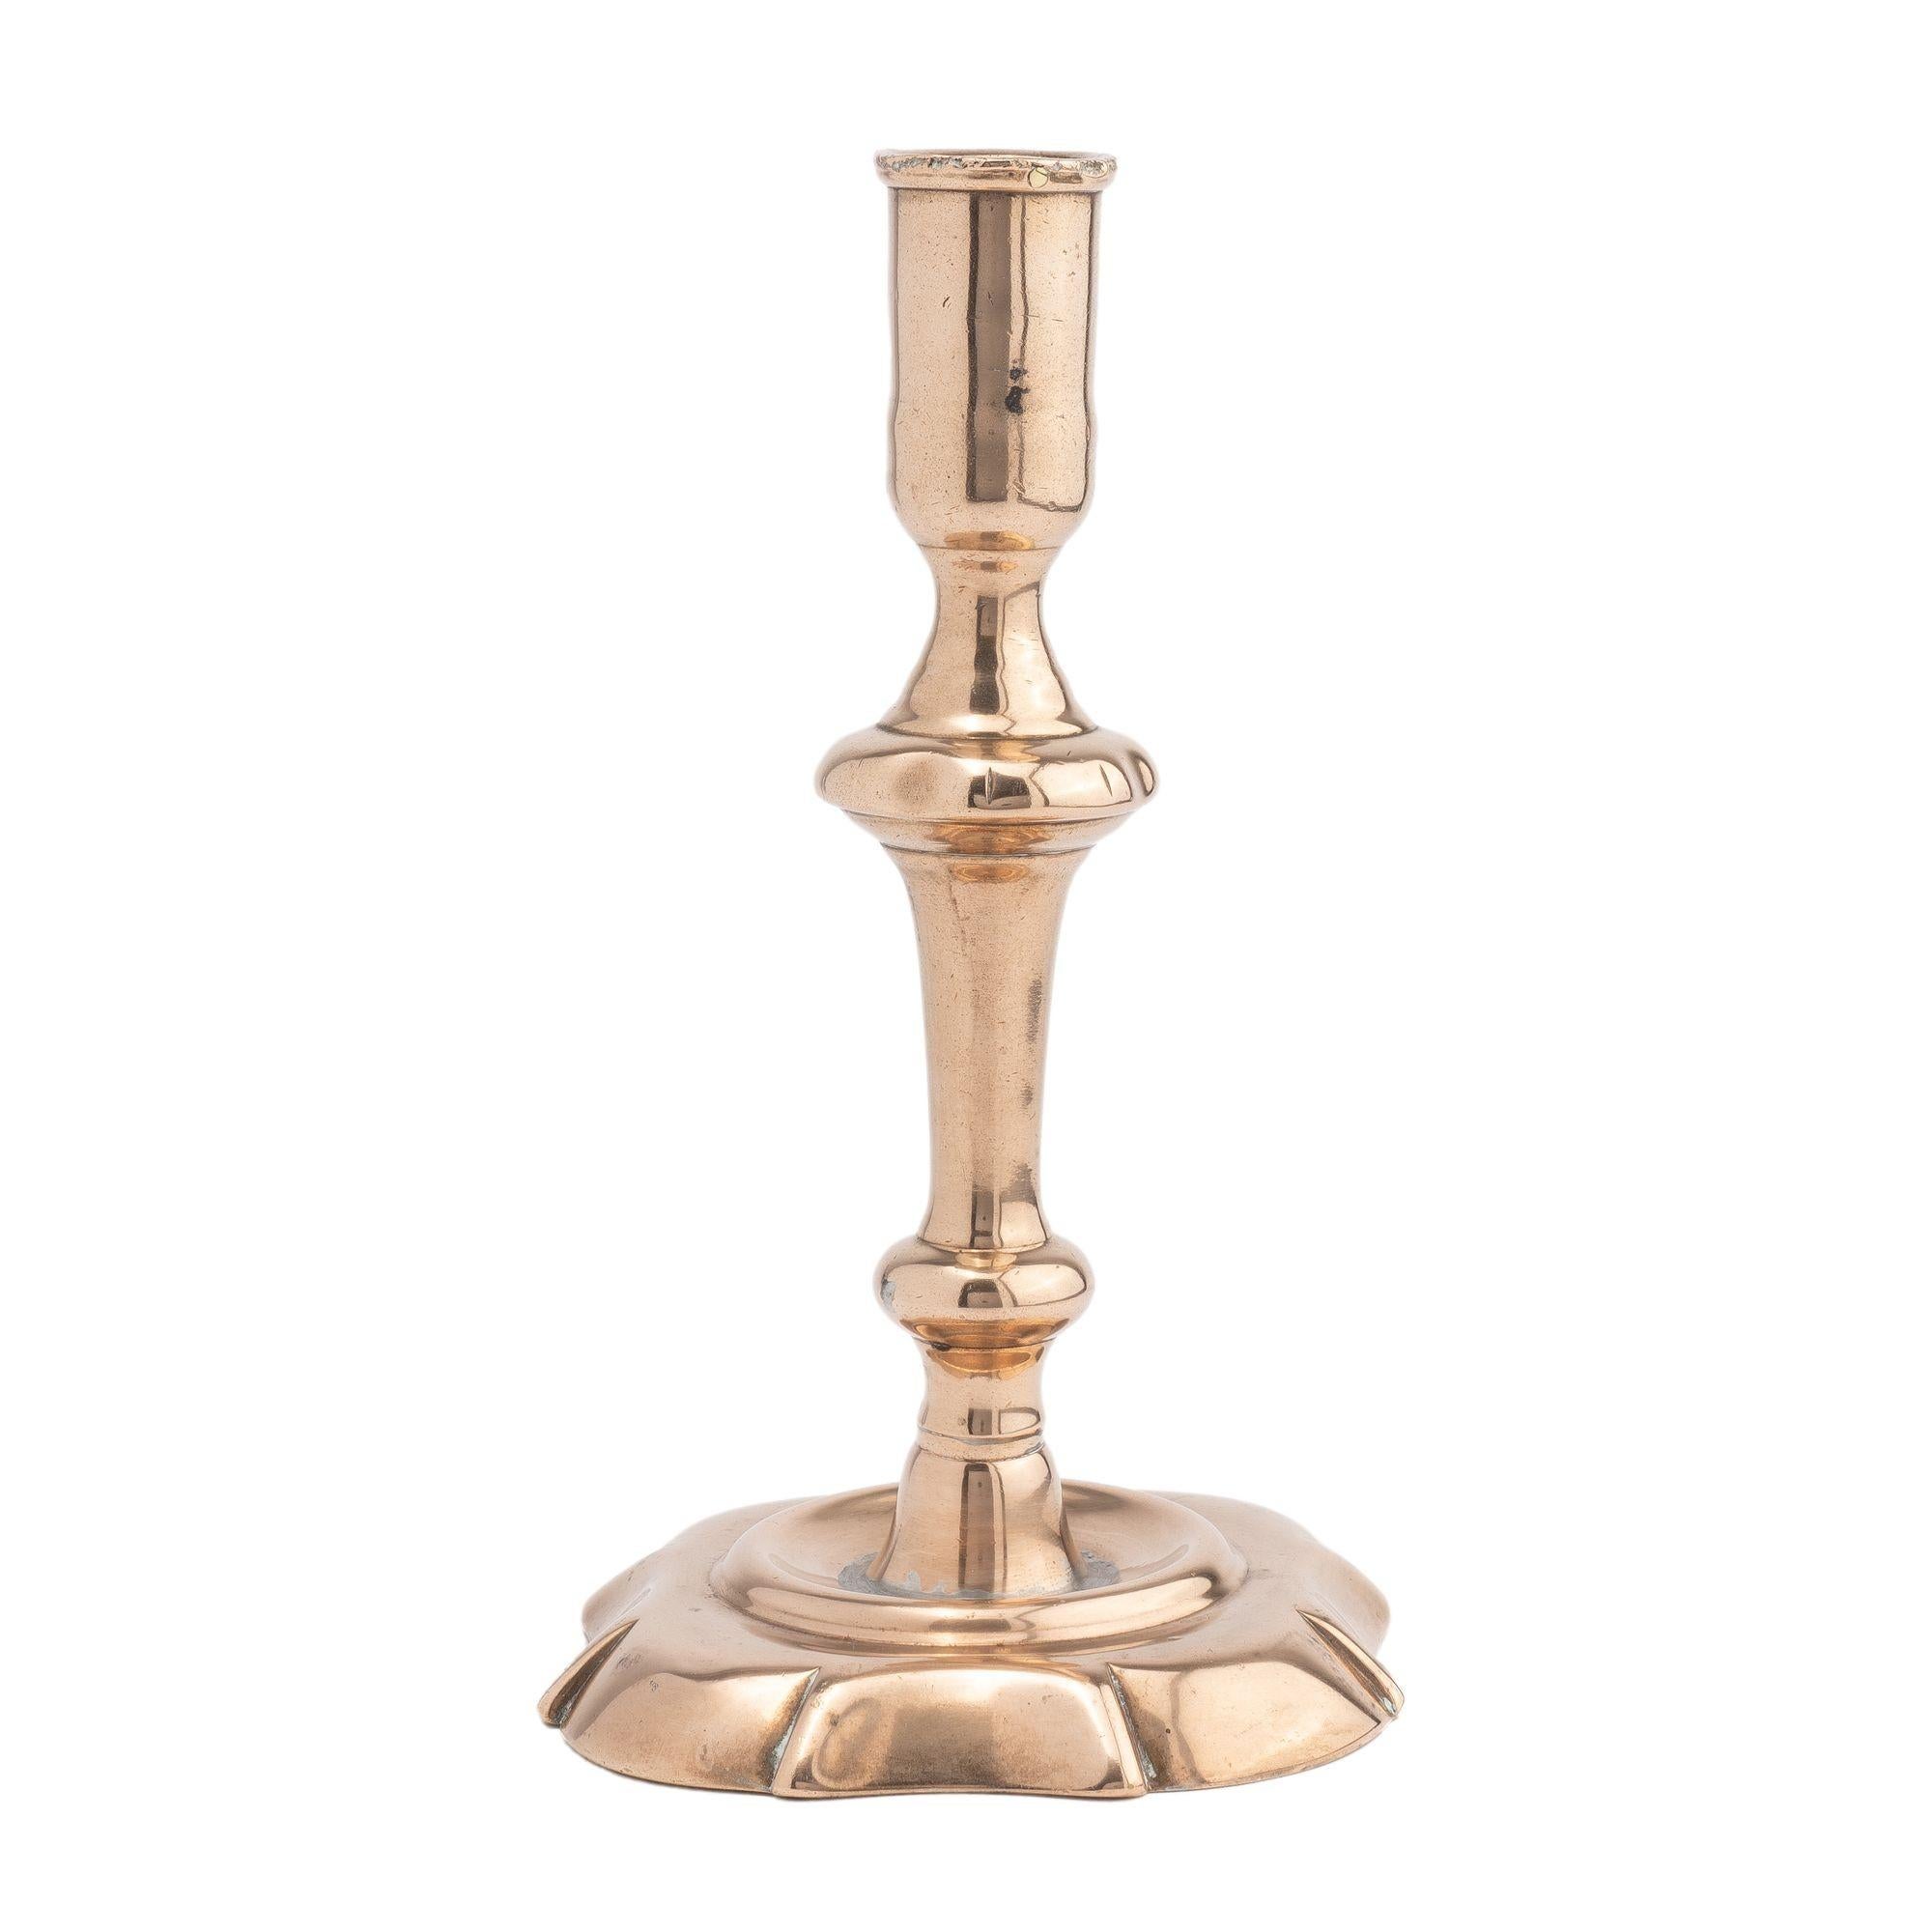 Bougeoir Queen Anne en métal moulé à cloche creuse. Le chandelier est composé d'une coupe allongée, d'une taille et d'un bouton lobé. Le bouton est soutenu par une trompette inversée tournant sur un bouton, une taille et un lobe d'angle avec une